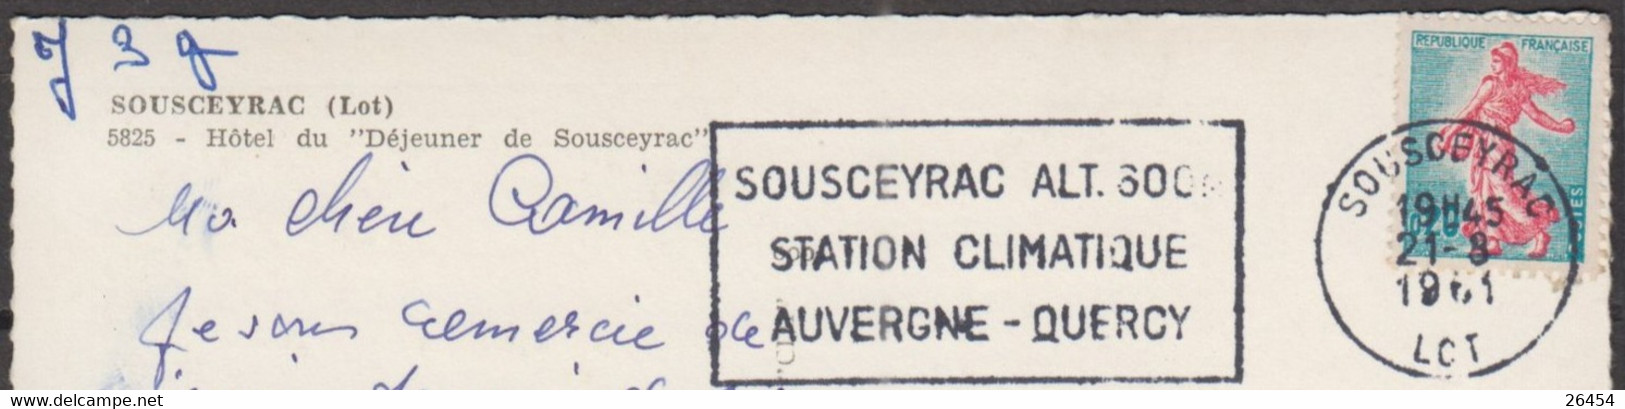 CPSM  De 46 SOUSCEYRAC  " Hotel Du Déjeuner De Sousceyrac "  Postée  Le 21 8 1961 Avec Semeuse De Piel 20c - Sousceyrac